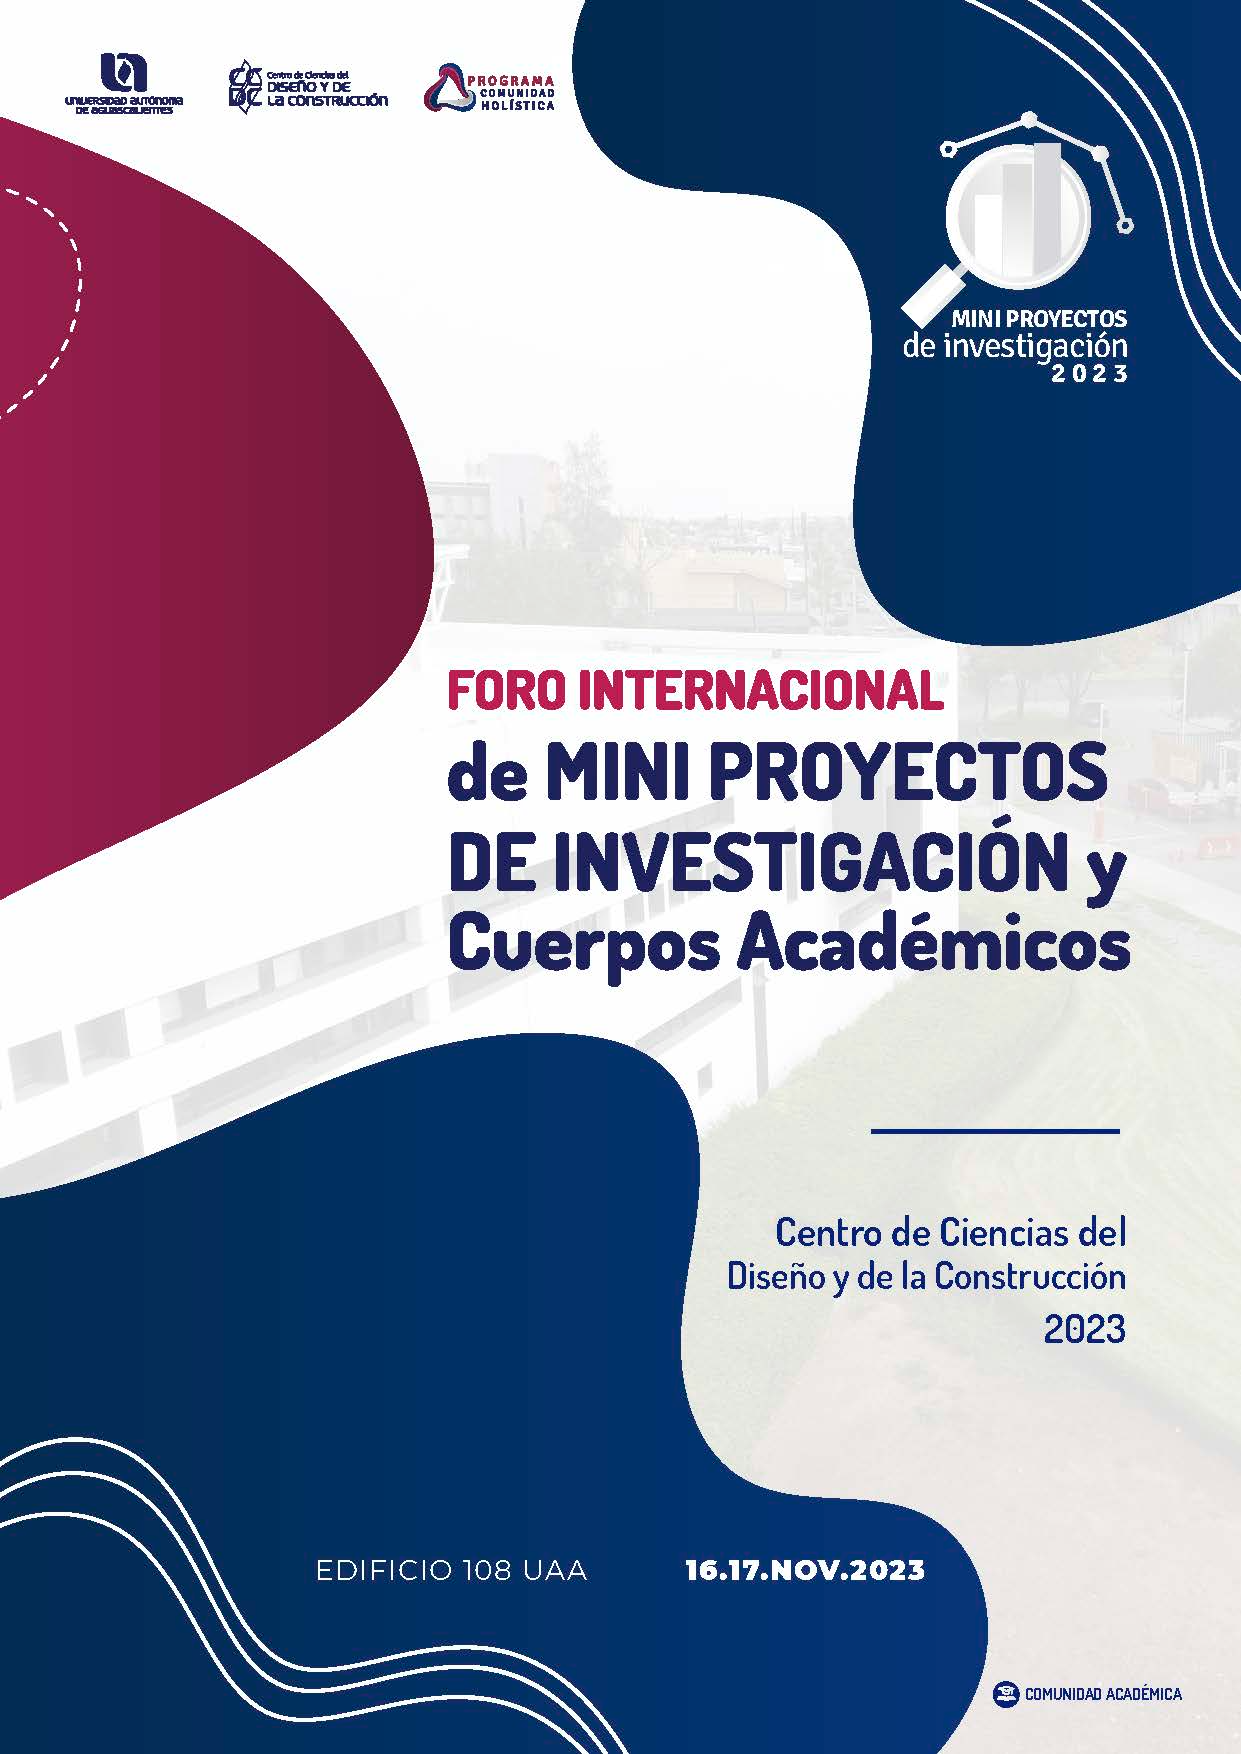 FORO INTERNACIONAL DE MINI PROYECTOS DE INVESTIGACIÓN Y CUERPOS ACADÉMICOS DEL CCDC 2023